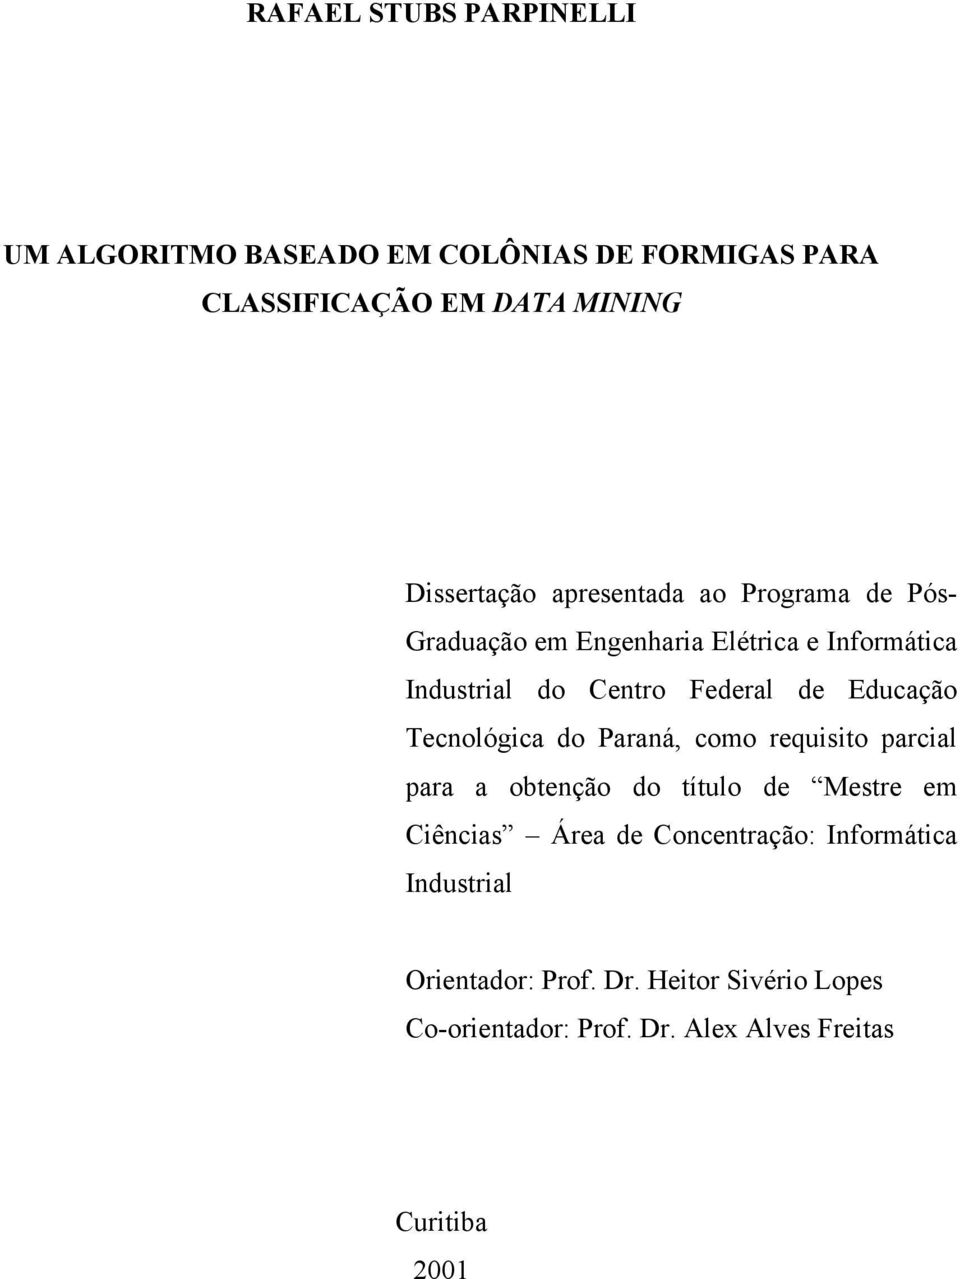 Educação Tecnológica do Paraná, como requisito parcial para a obtenção do título de Mestre em Ciências Área de